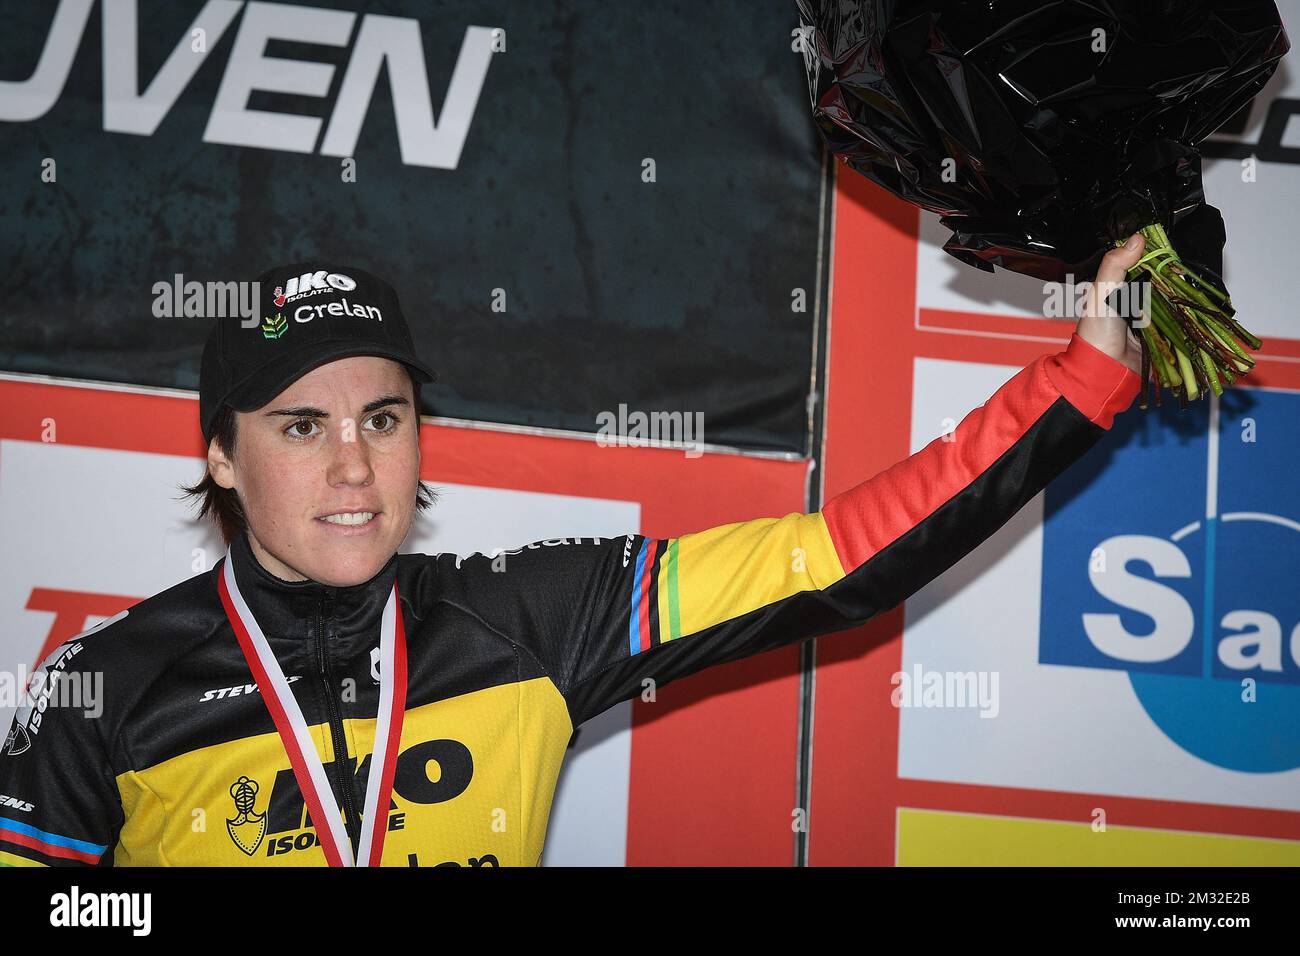 La belga Sanne Cant, representada en el podio después de la carrera de élite femenina en el 'Cyclocross Leuven', cuarta etapa (fuera de fice) en el concurso de ciclismo 'Rectavit Series', el sábado 22 de febrero de 2020 en Heverlee, Lovaina. BELGA FOTO DAVID STOCKMAN Foto de stock